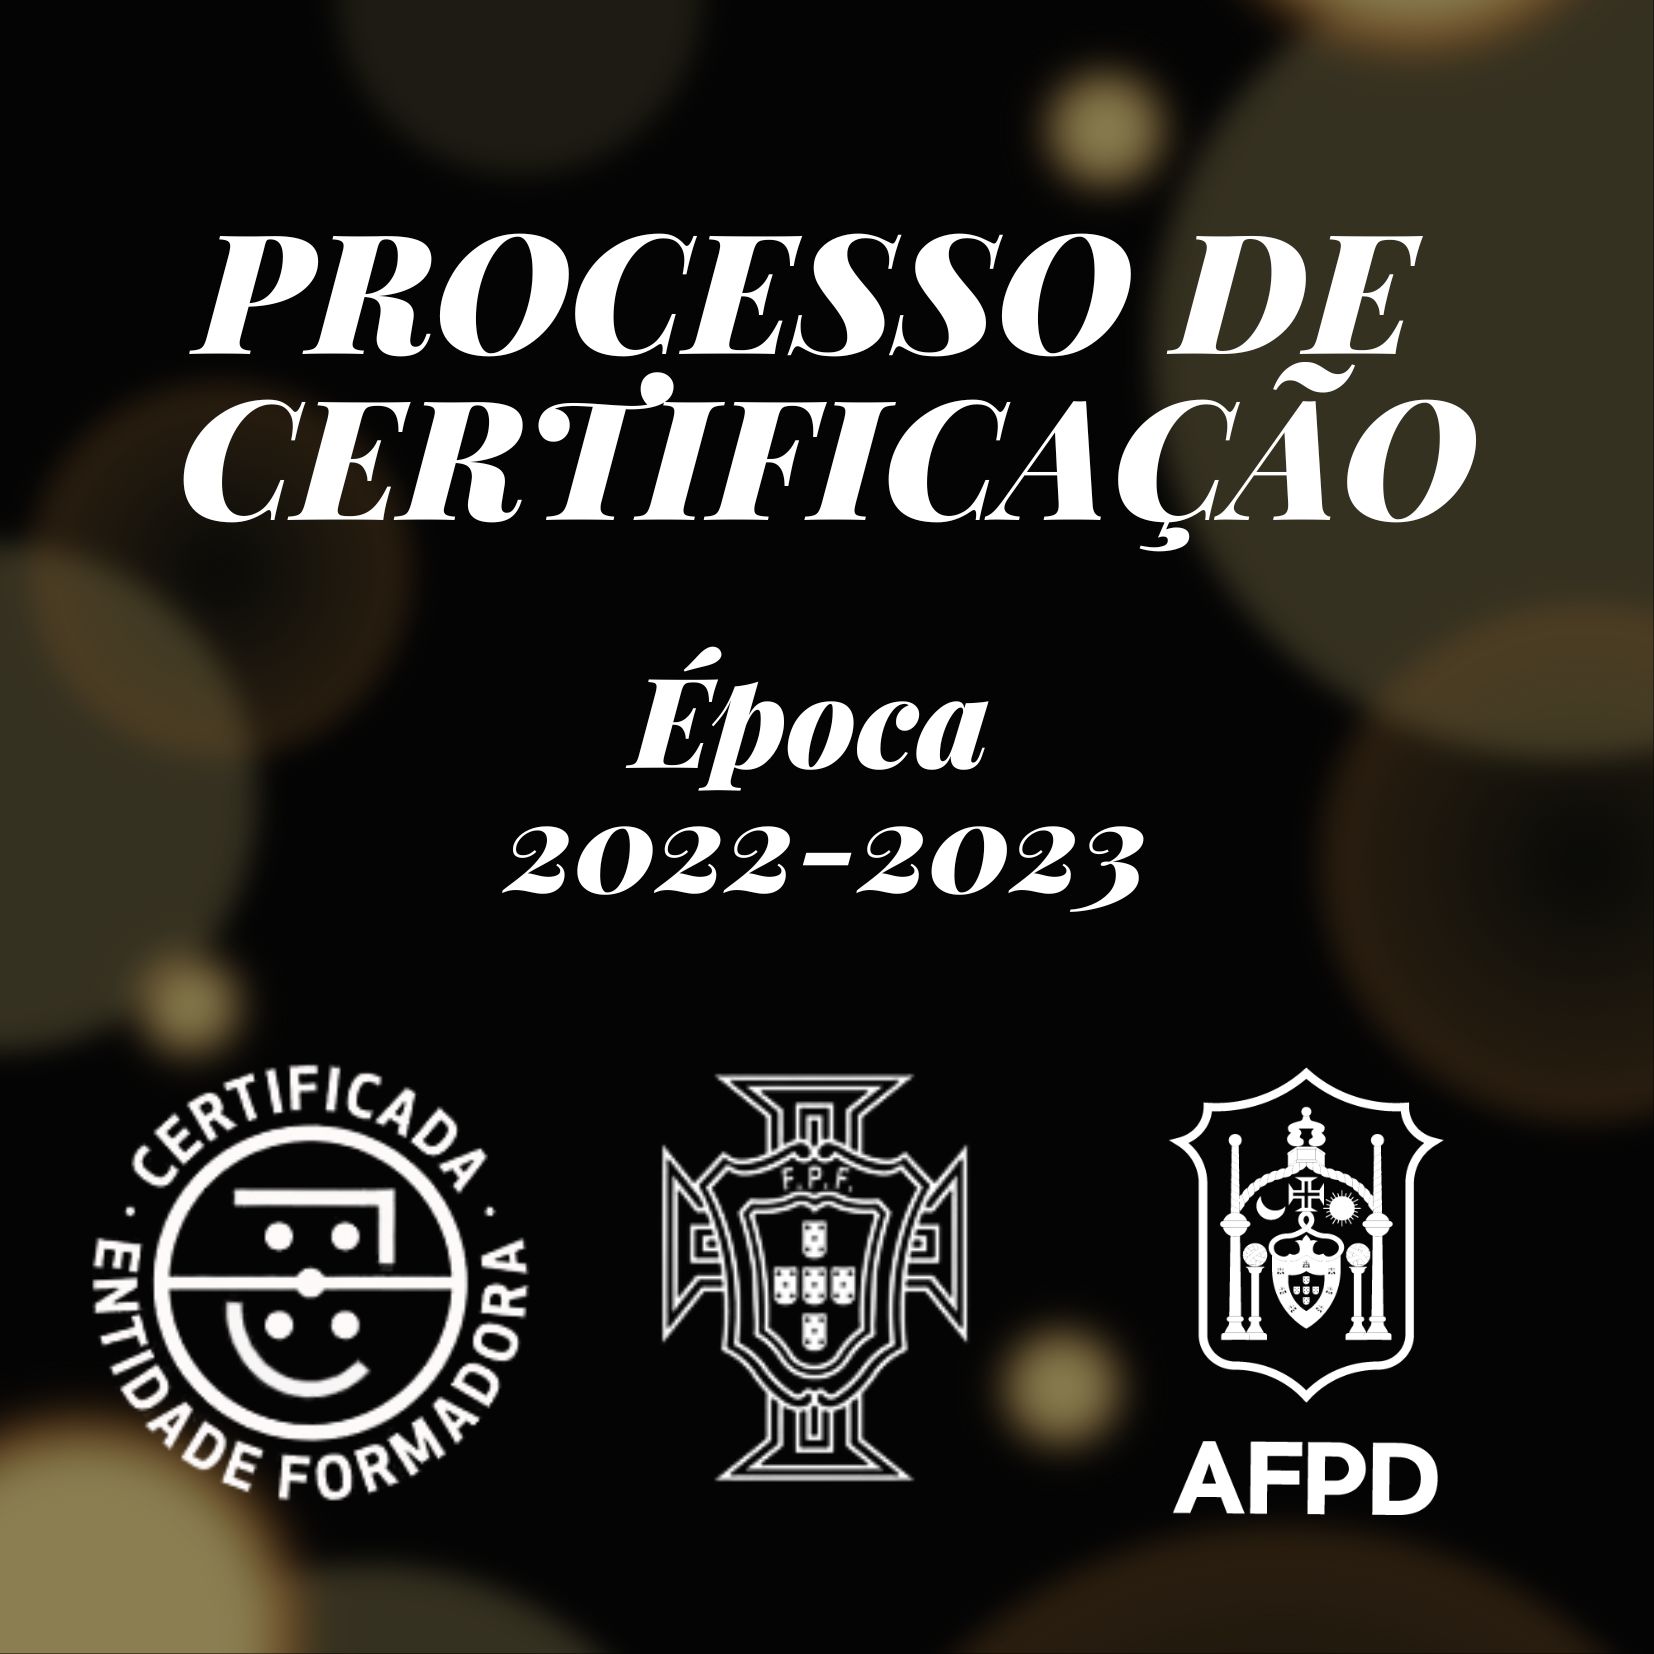 Processo de Certificação - Época 2022/2023